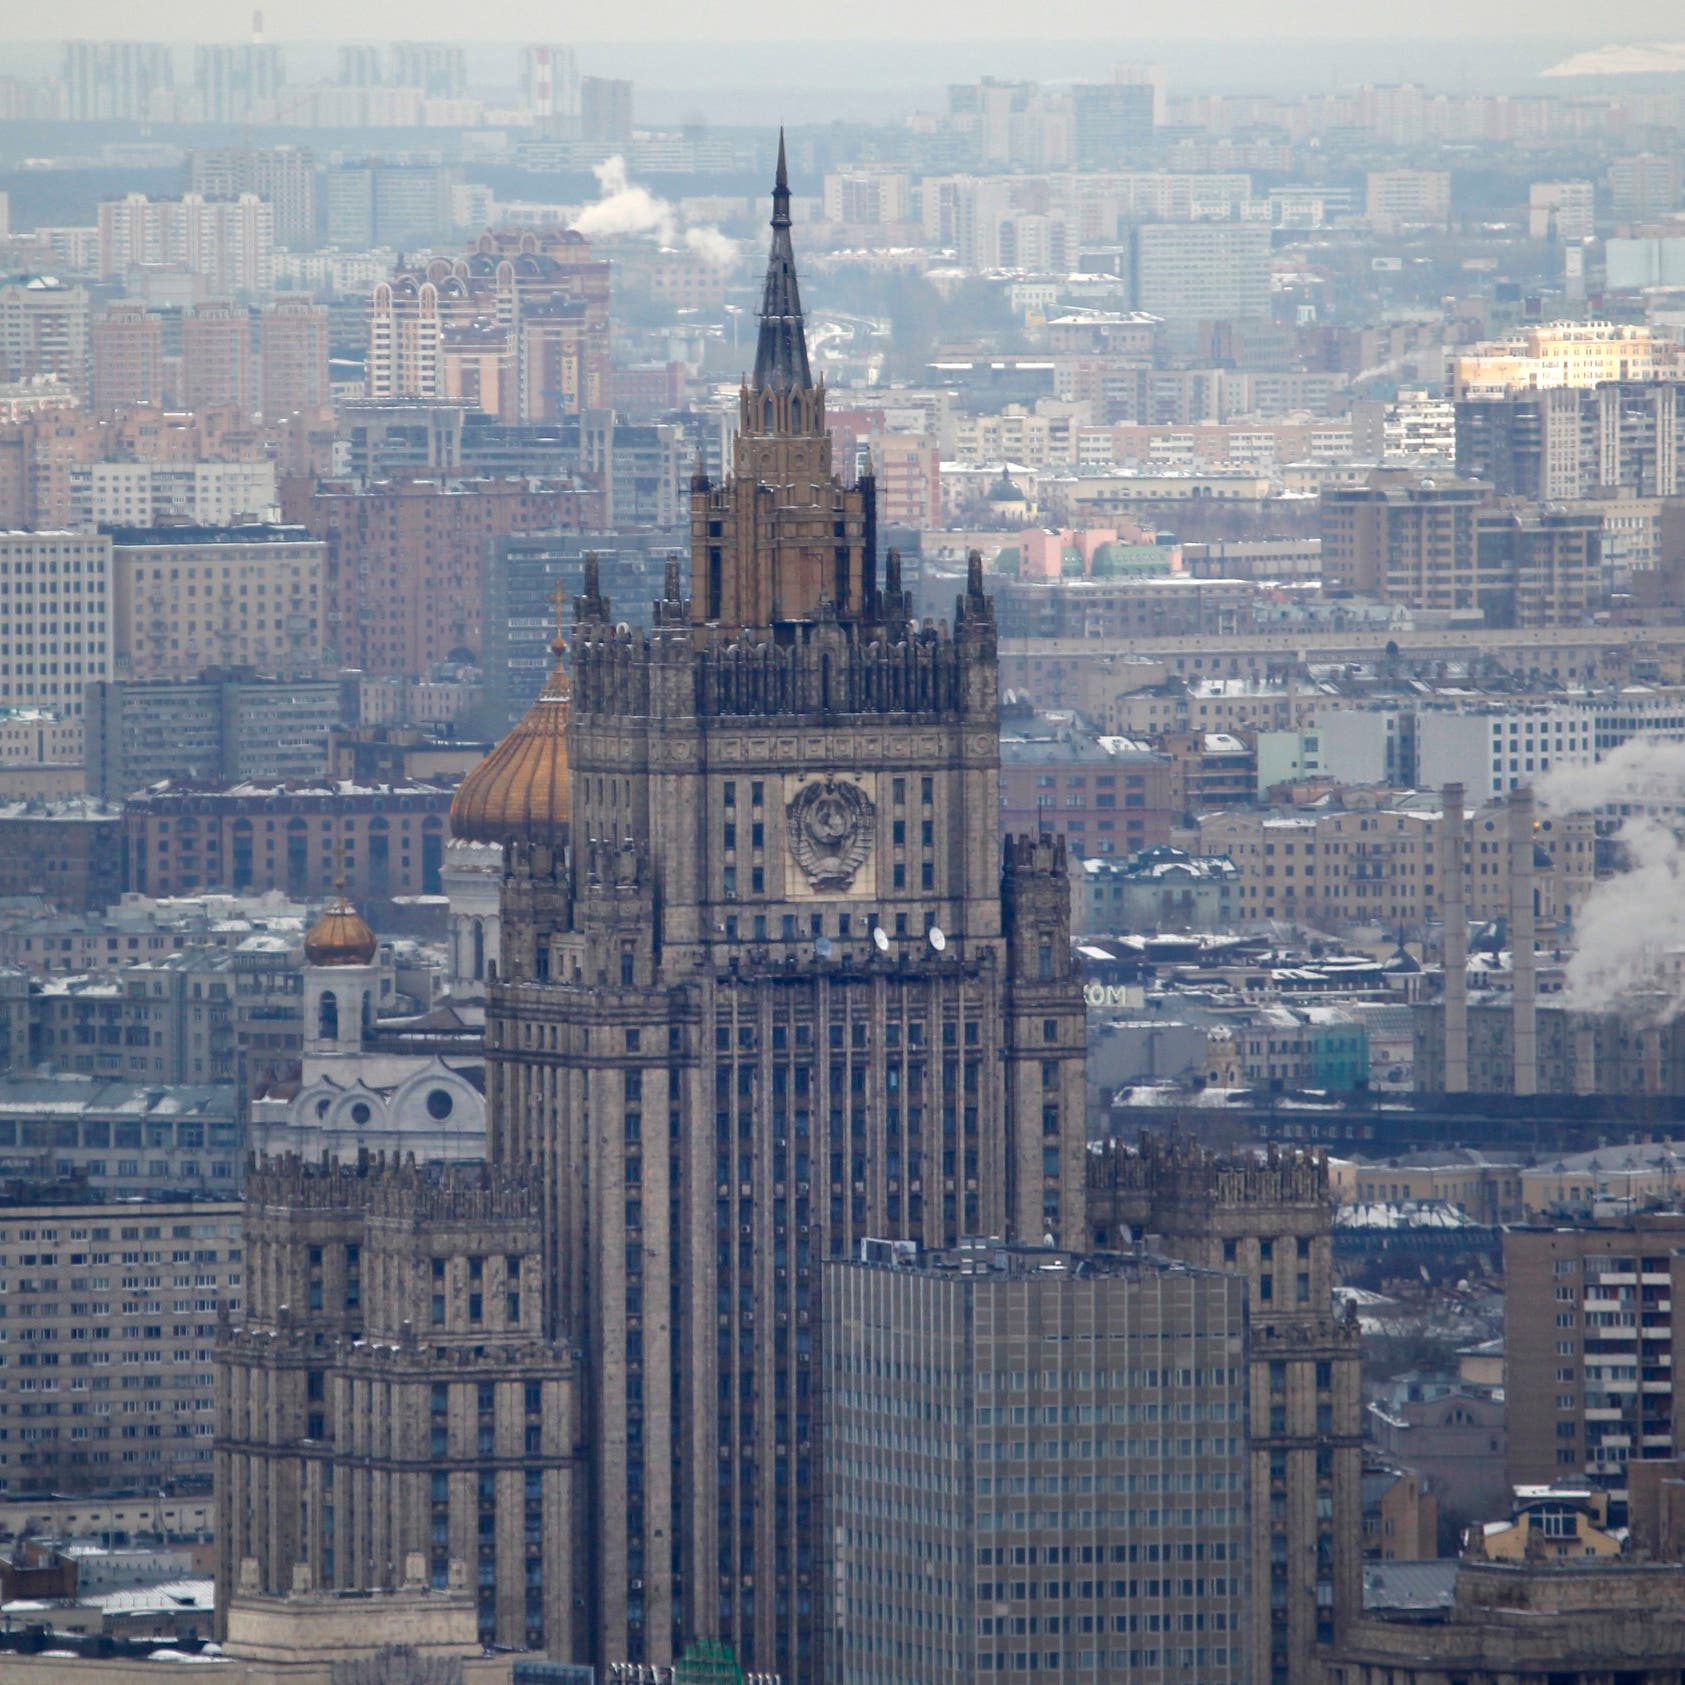 "فايننشال تايمز": كيف تعلمت روسيا العيش بدون واردات؟